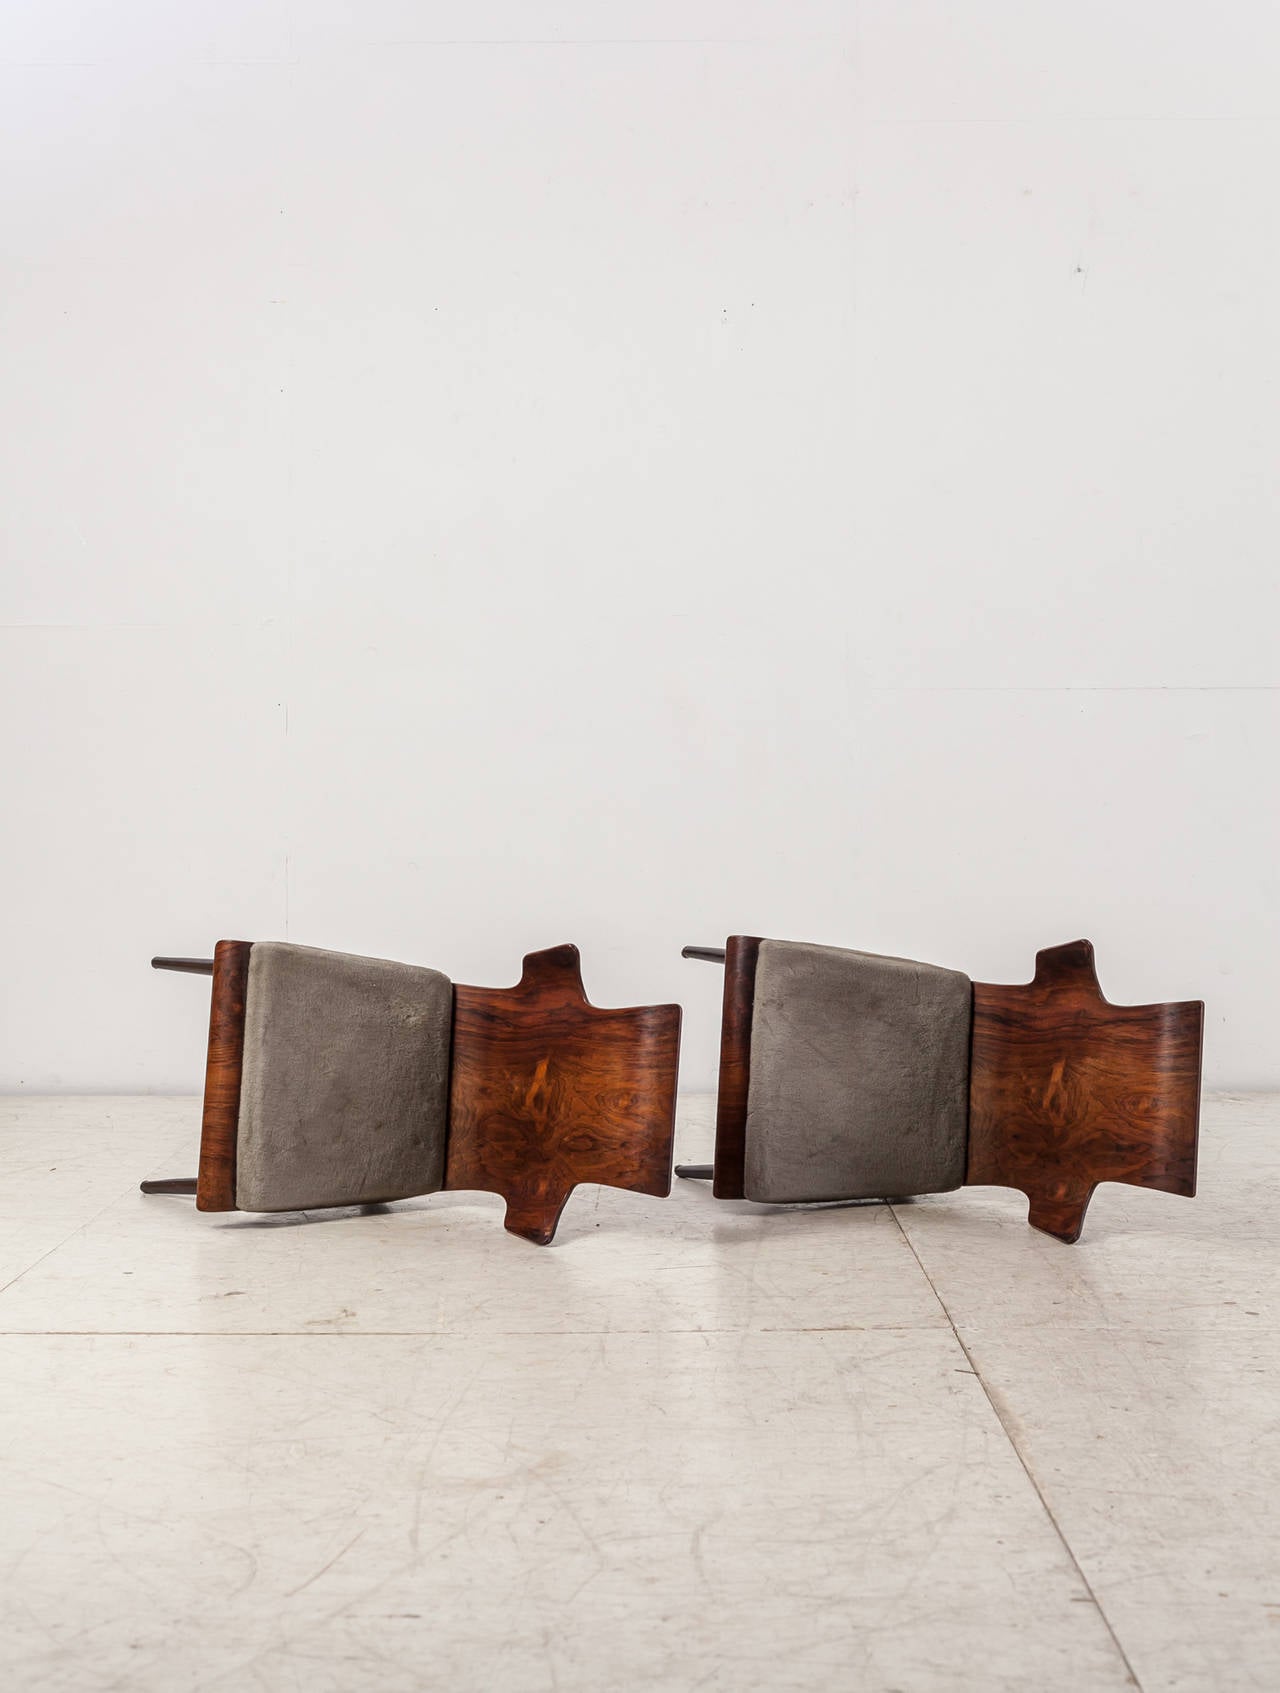 Ebonized Dante Latorre Rare Pair of Chairs for Pozzi e Verga. Italian, 1960s For Sale